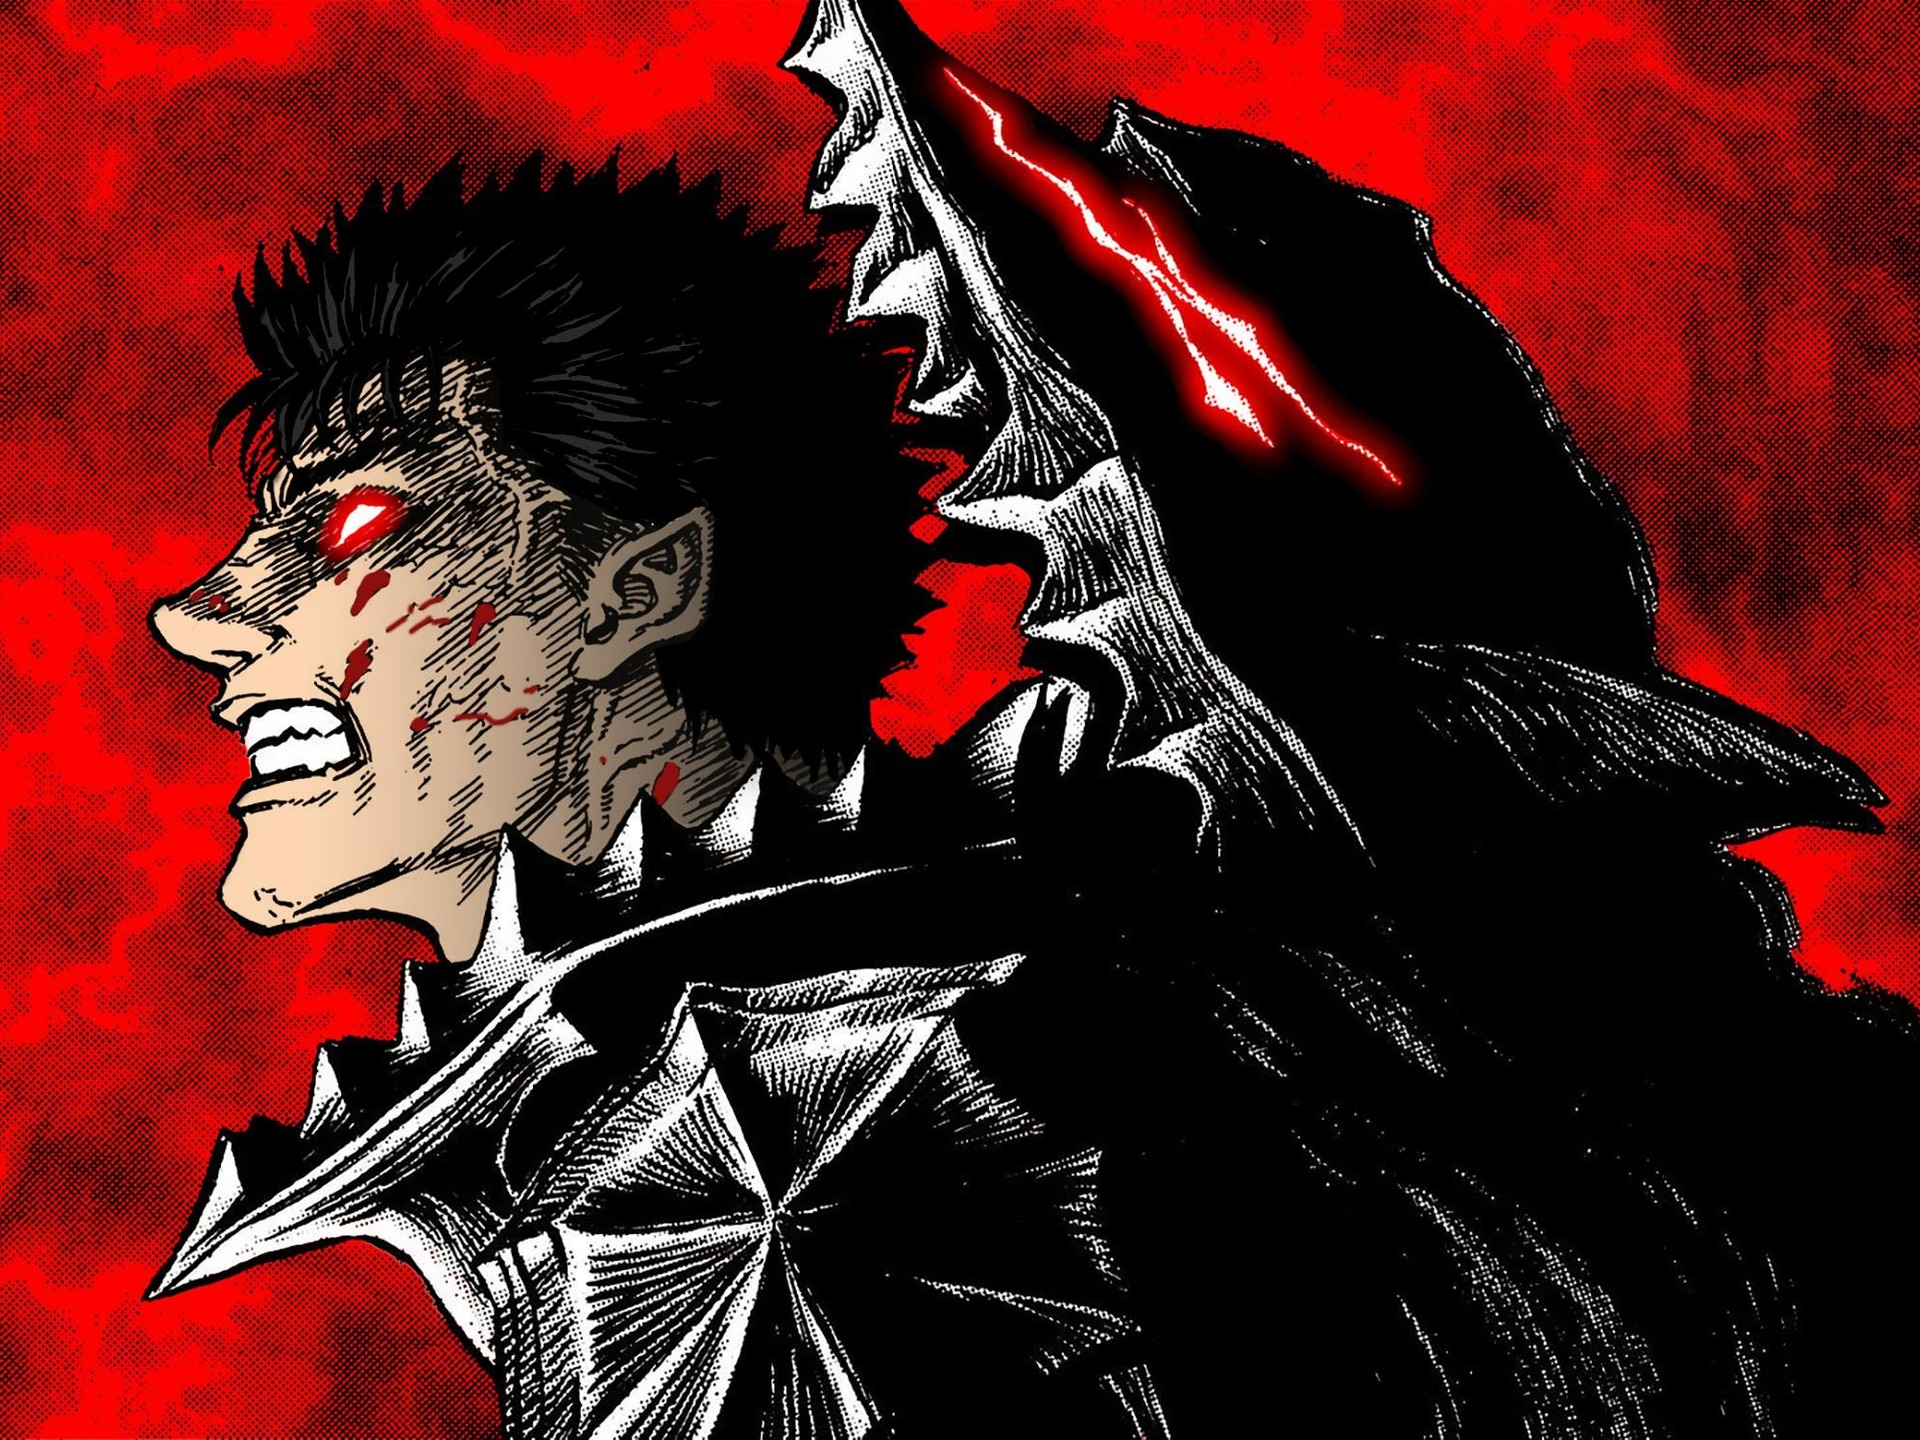 Netflix adquire direitos de transmissão de Berserk, Monster, Parasyte e  outros animes clássicos 